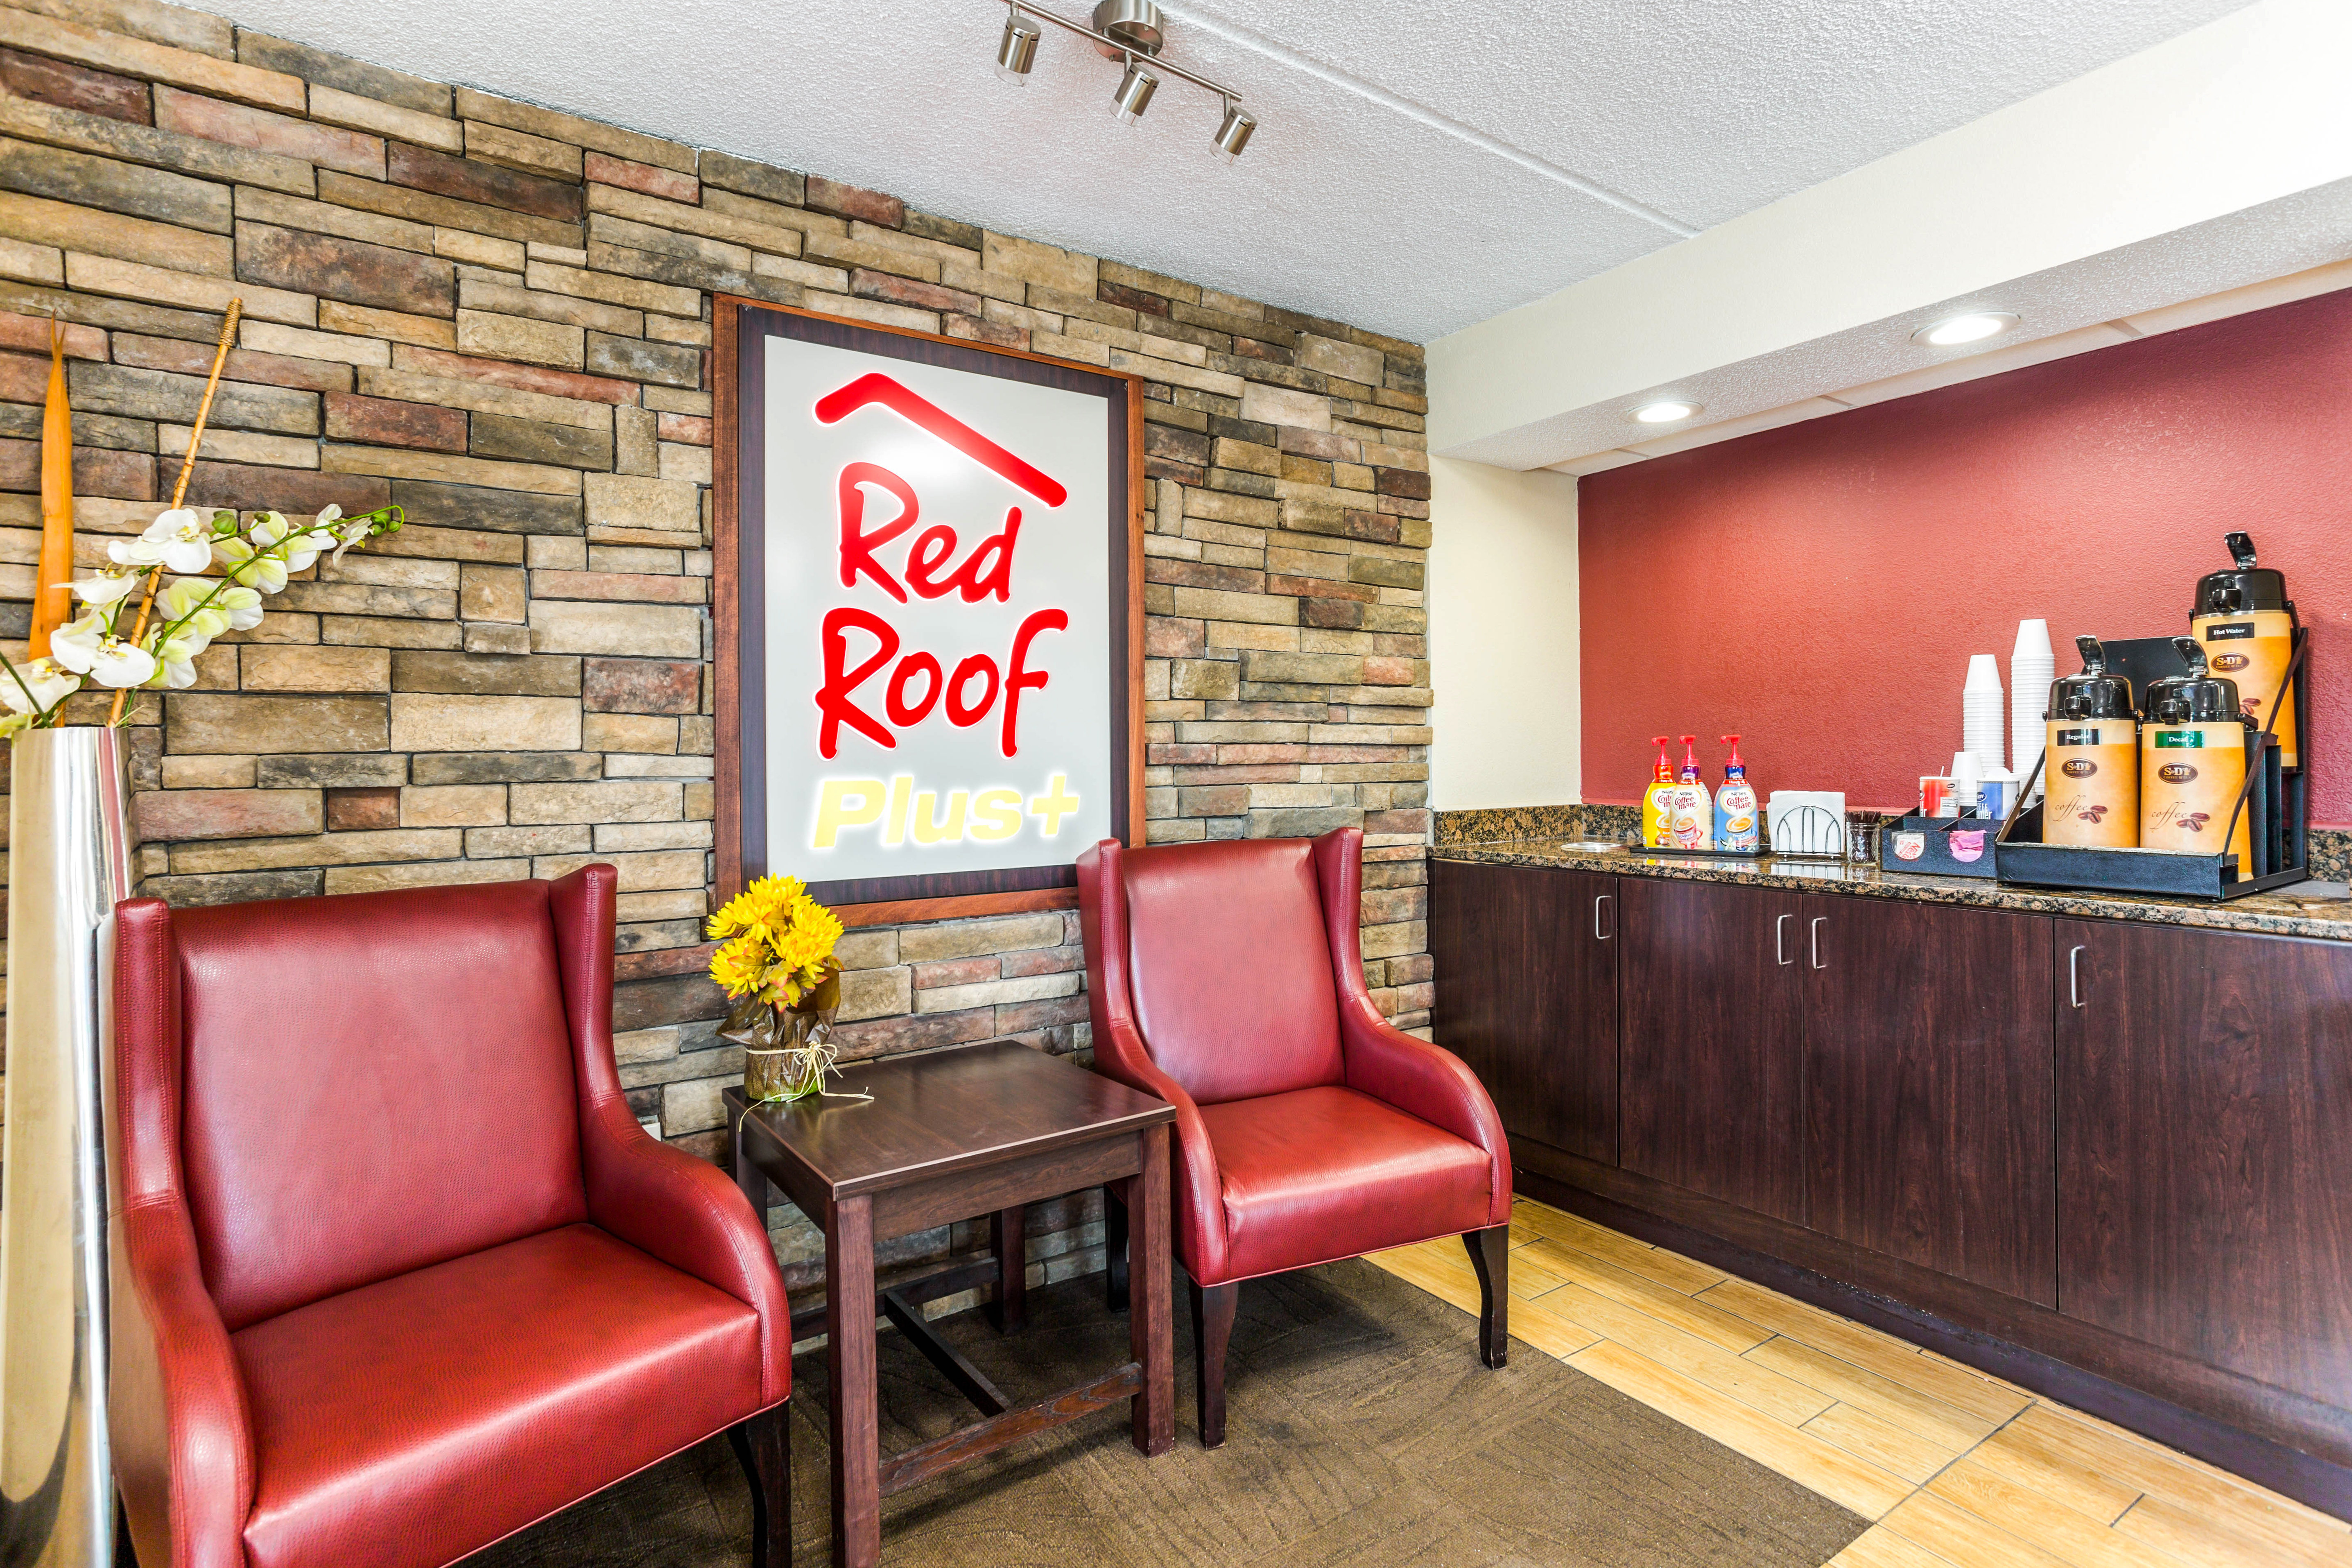 Red Roof Inn Plus+ Nashville North - Goodlettsville